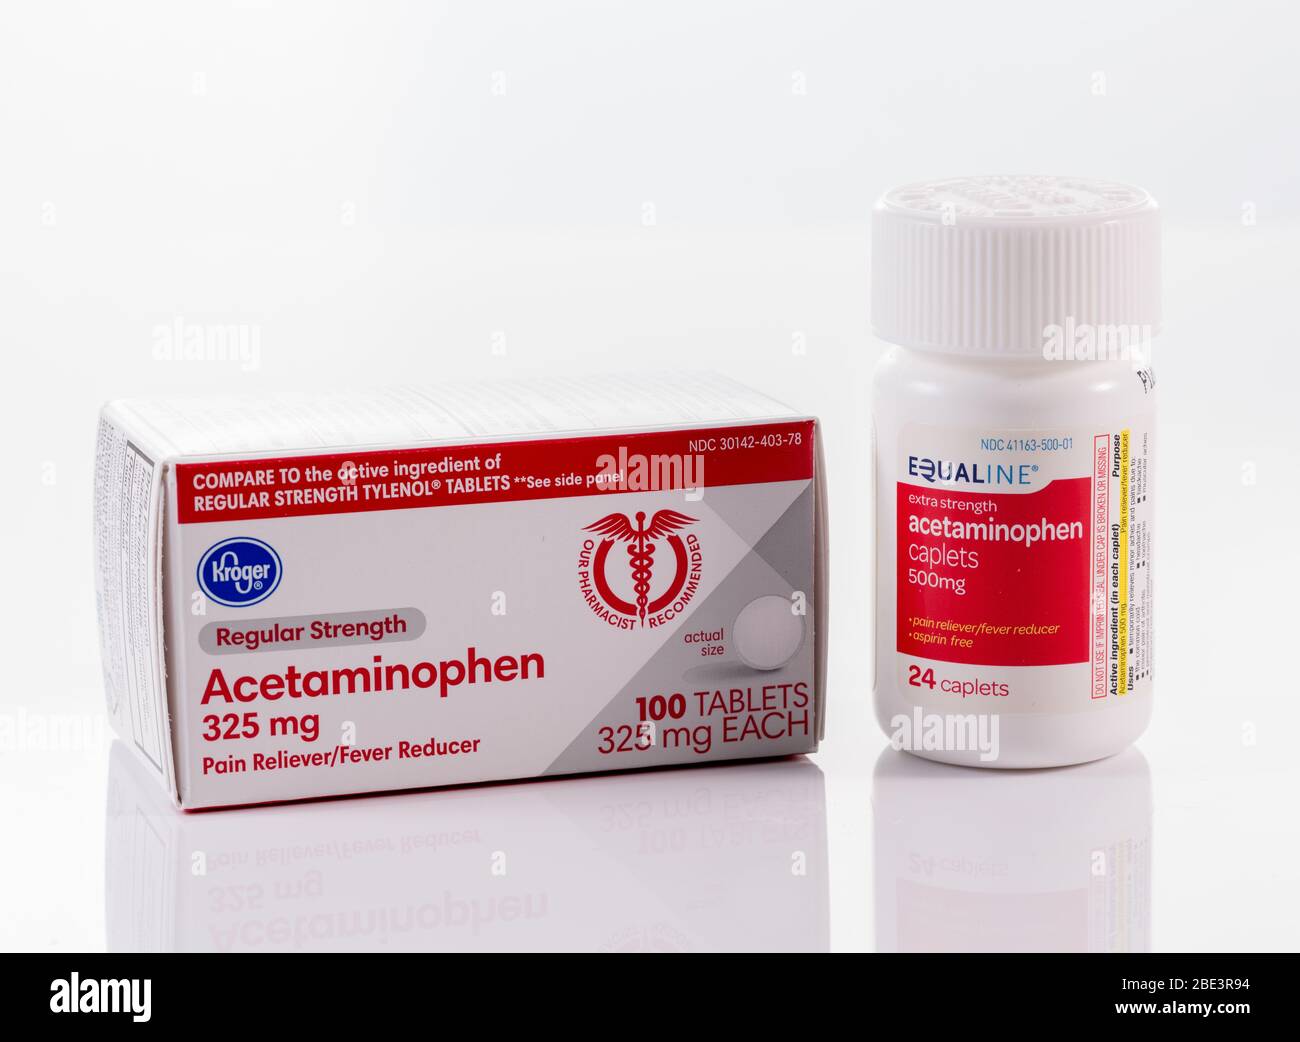 Morgantown, WV - 11. April 2020: Generische Acetaminophen oder Paracetamol  Tabletten zur Fieberreduktion in der Flasche auf weißem Hintergrund  Stockfotografie - Alamy